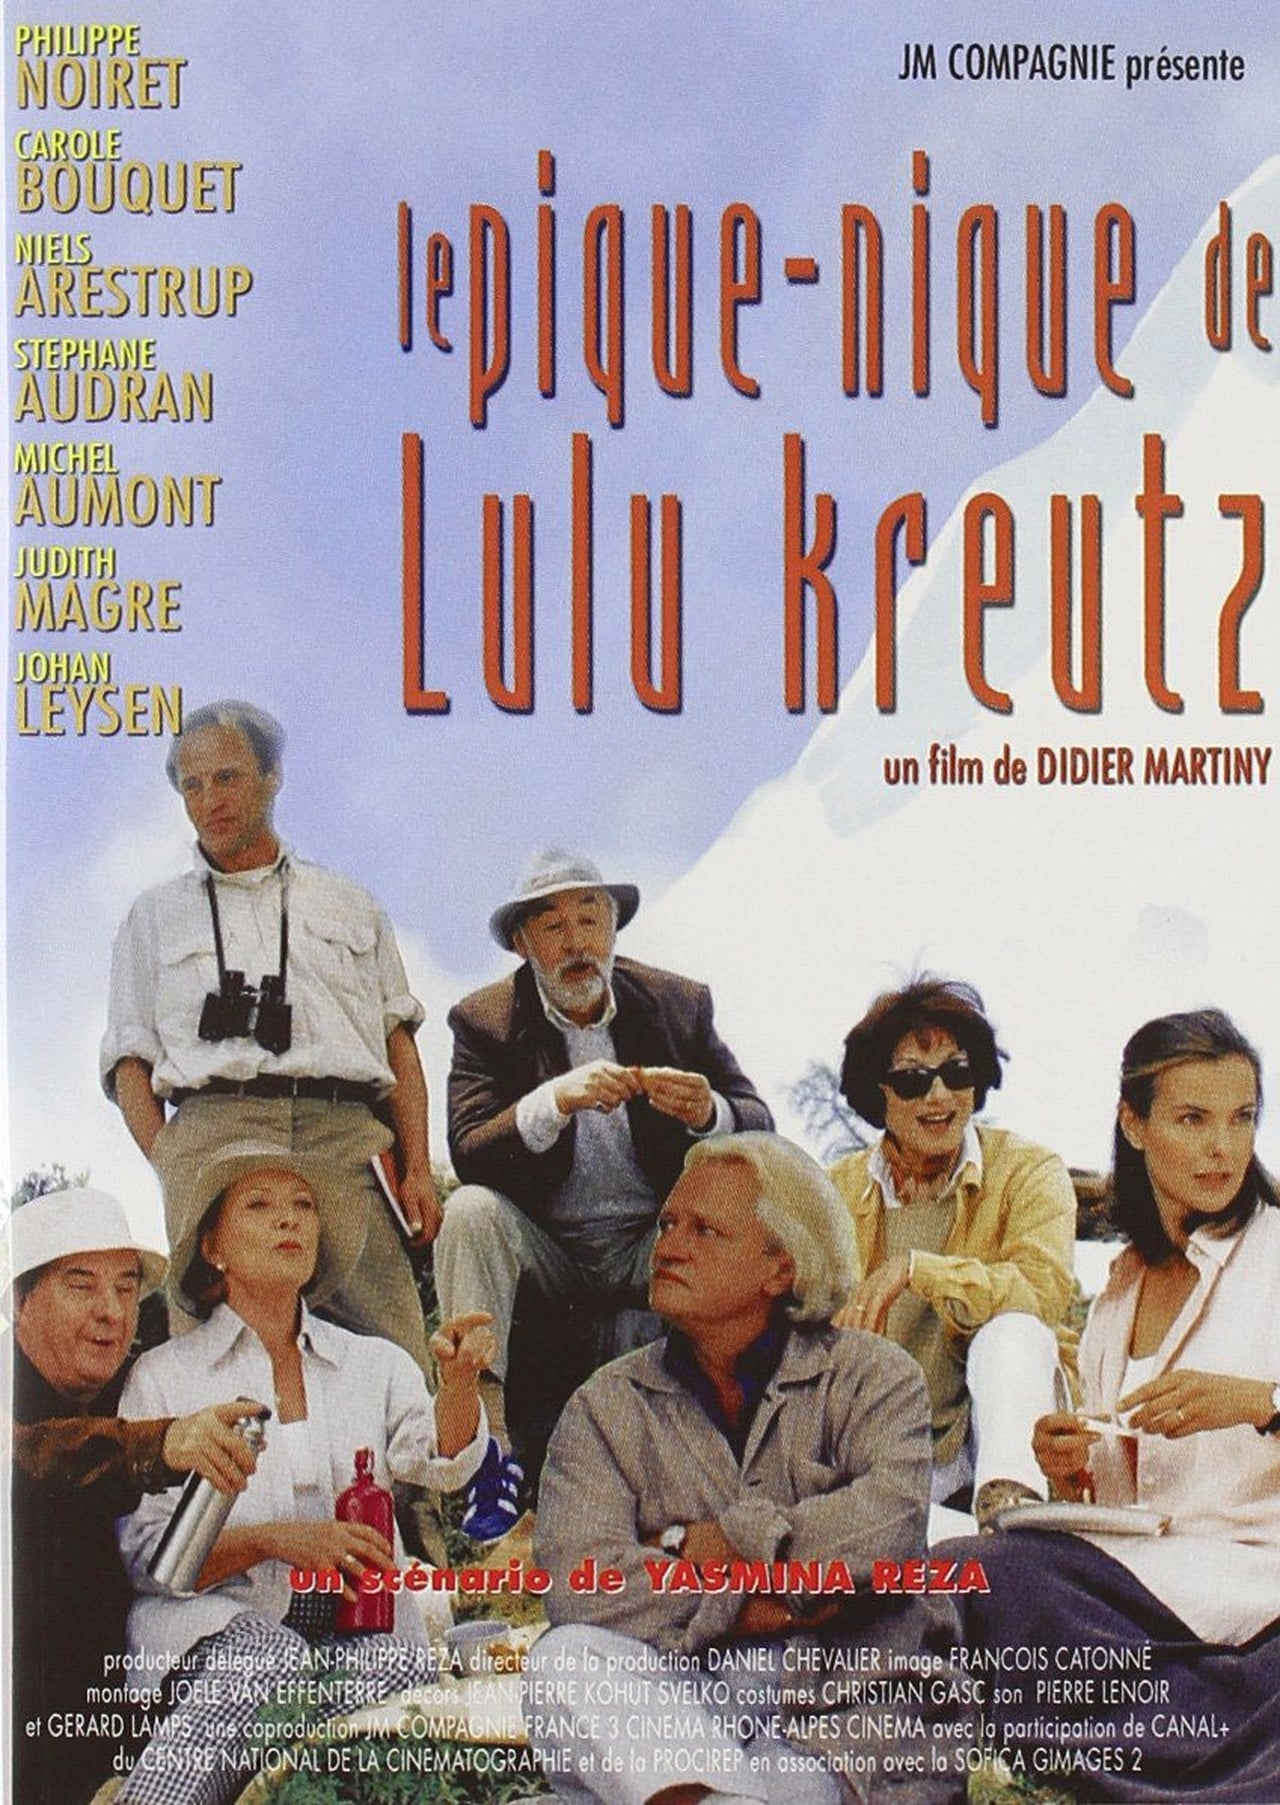 Le Pique-nique de Lulu Kreutz (2000)